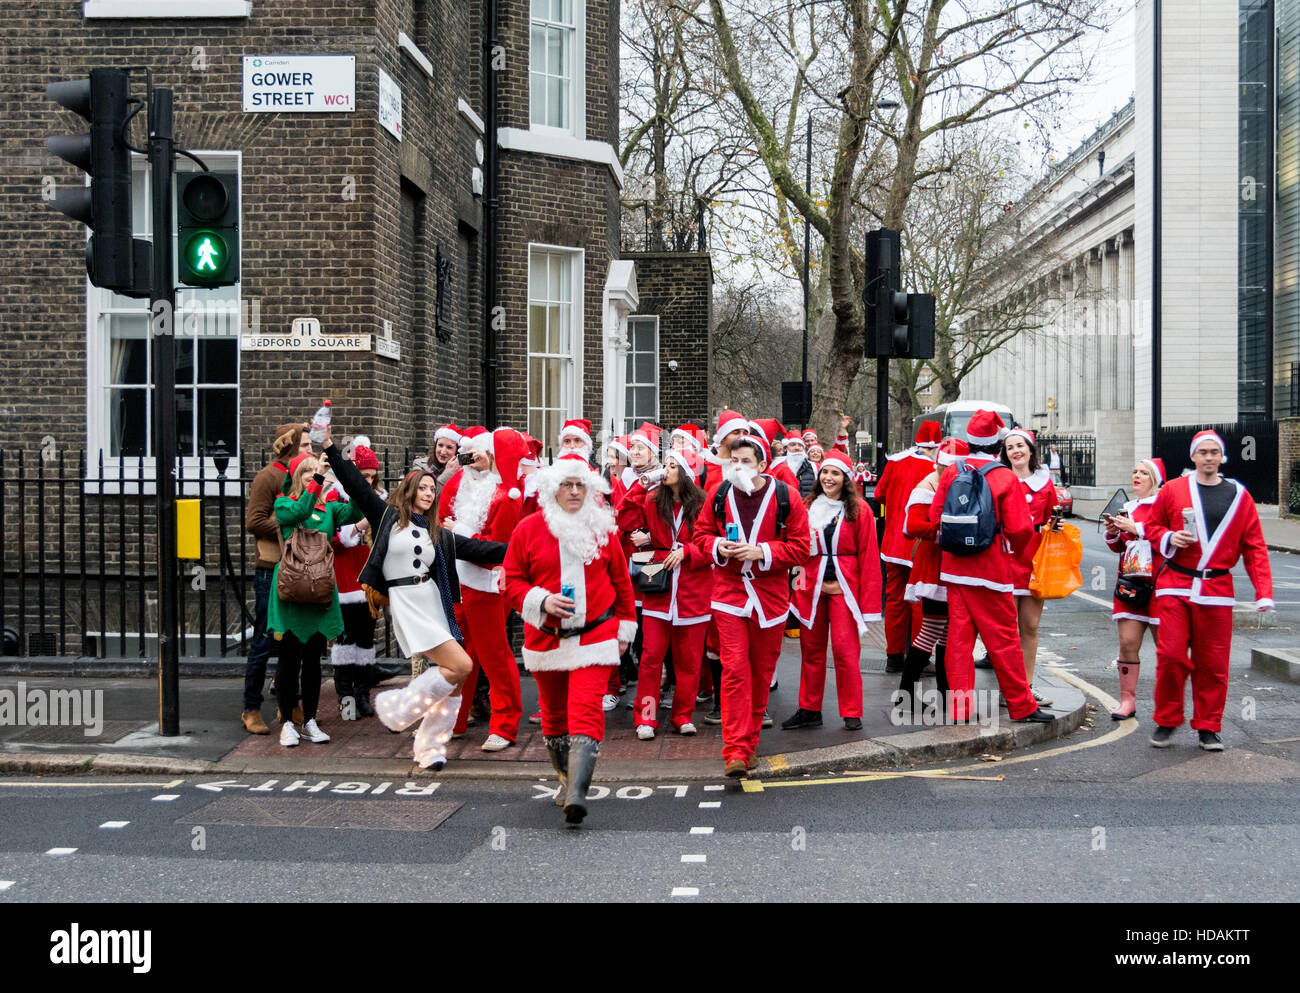 Santacon Santas auf den Straßen von London. Santacon ist eine nicht-religiöse Weihnachtsparade, die normalerweise jeden Dezember an einem Samstag in London stattfindet. Stockfoto